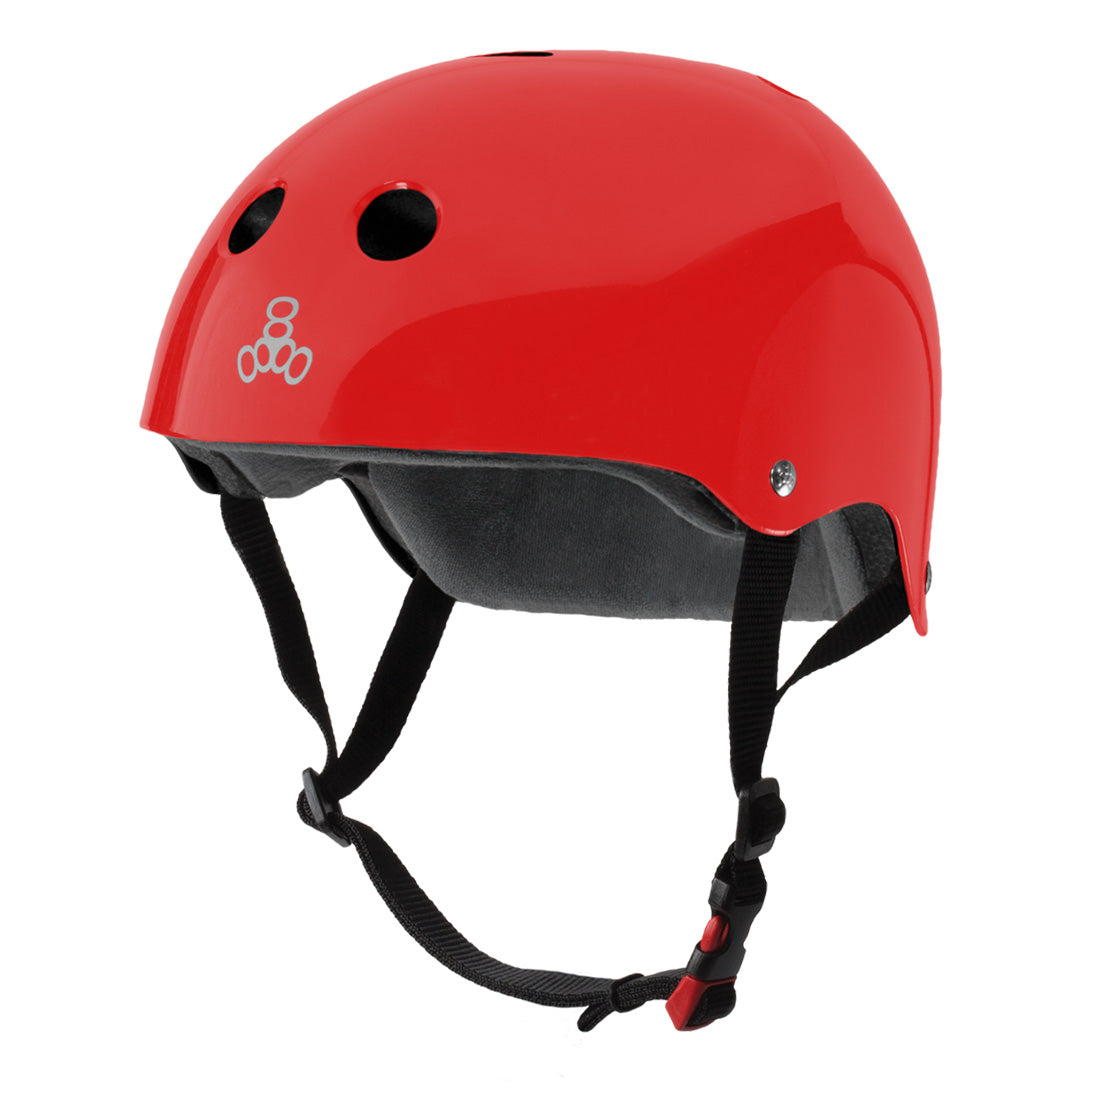 Triple 8 THE Cert SS Helmet - Red Gloss Helmets